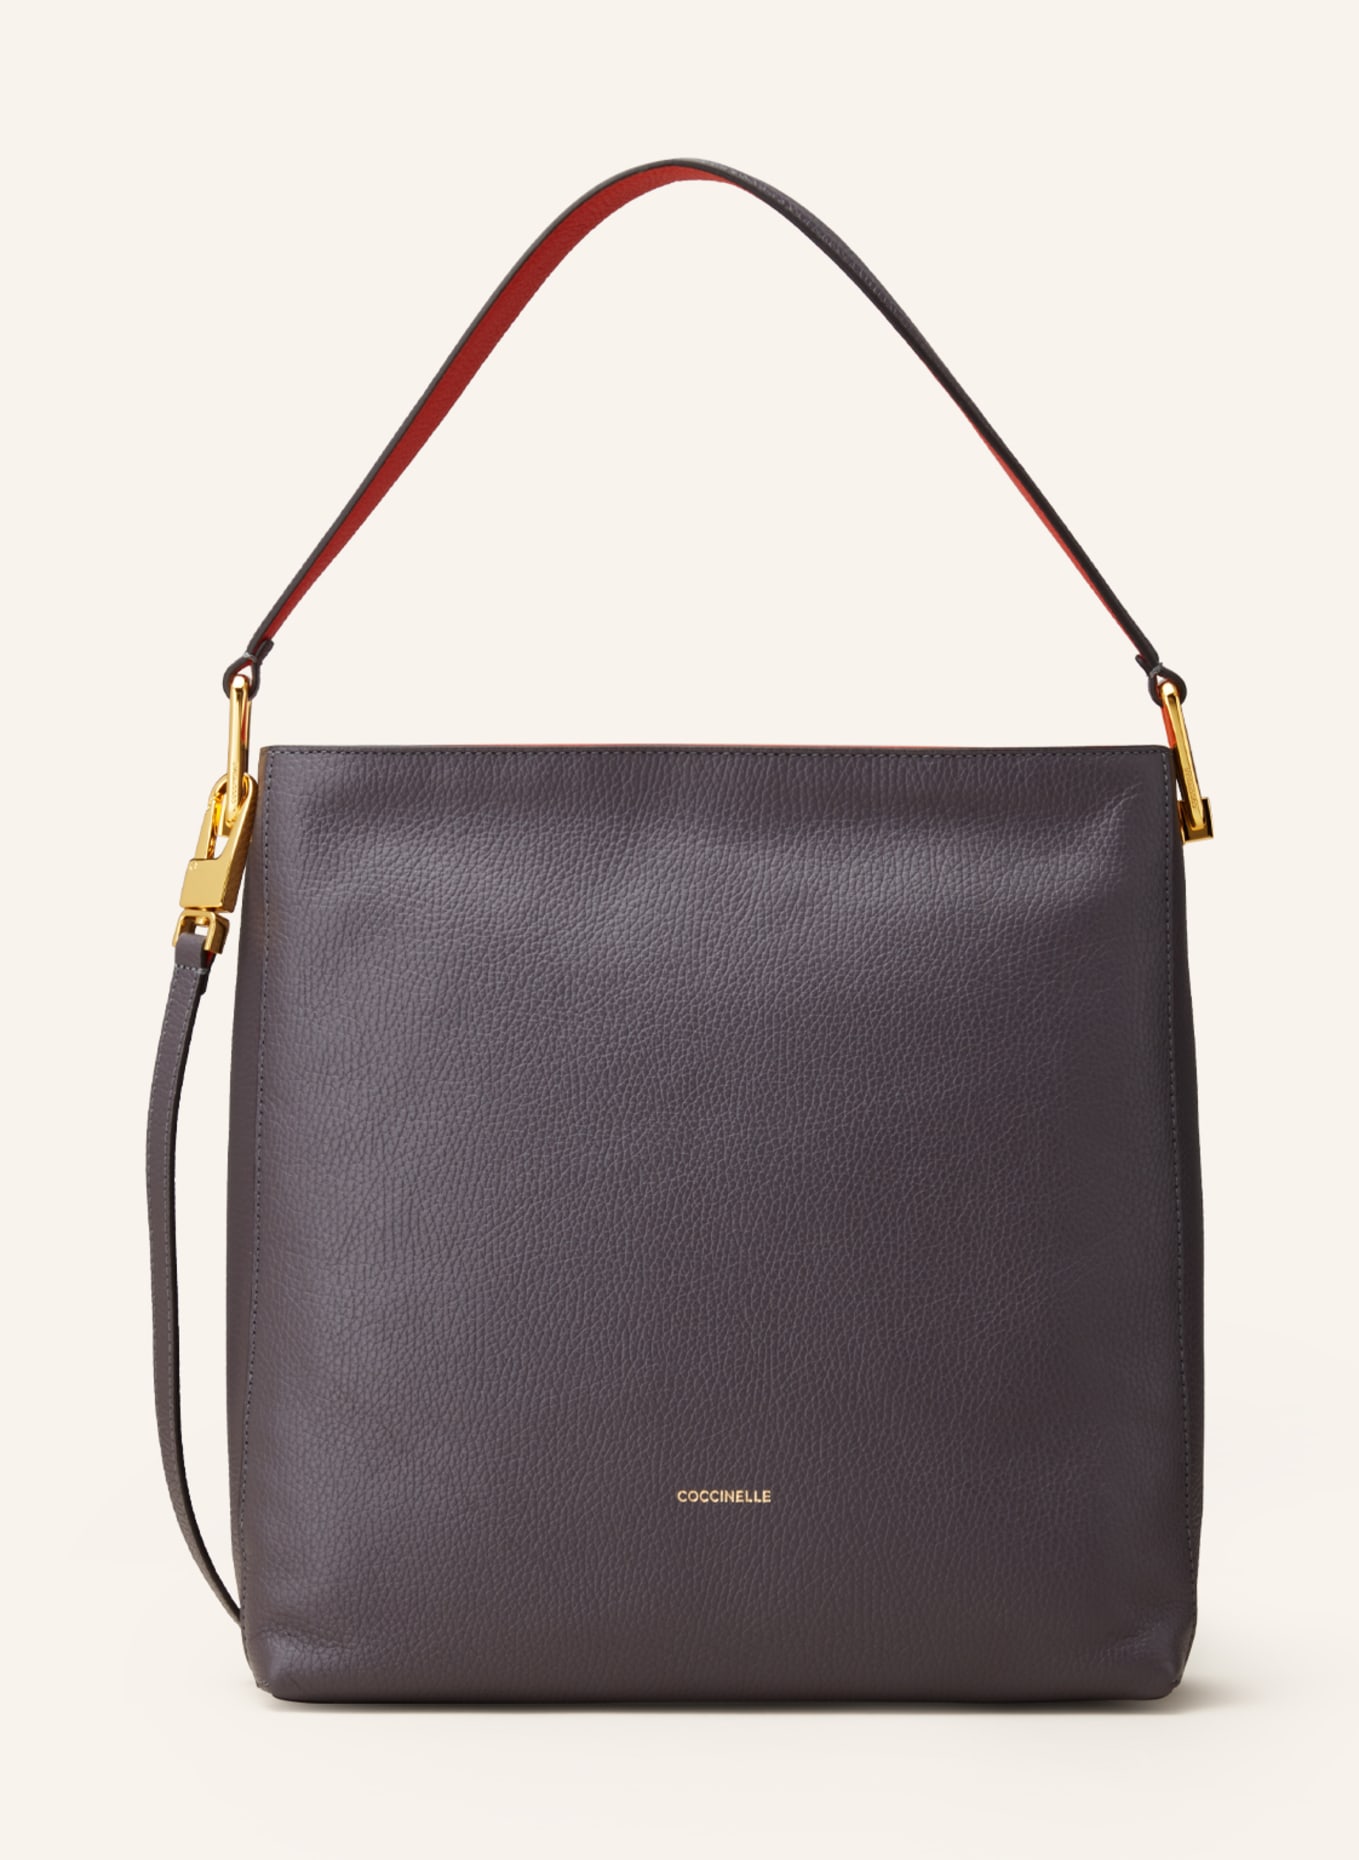 COCCINELLE Hobo-Bag , Farbe: GRAU/ ORANGE (Bild 1)